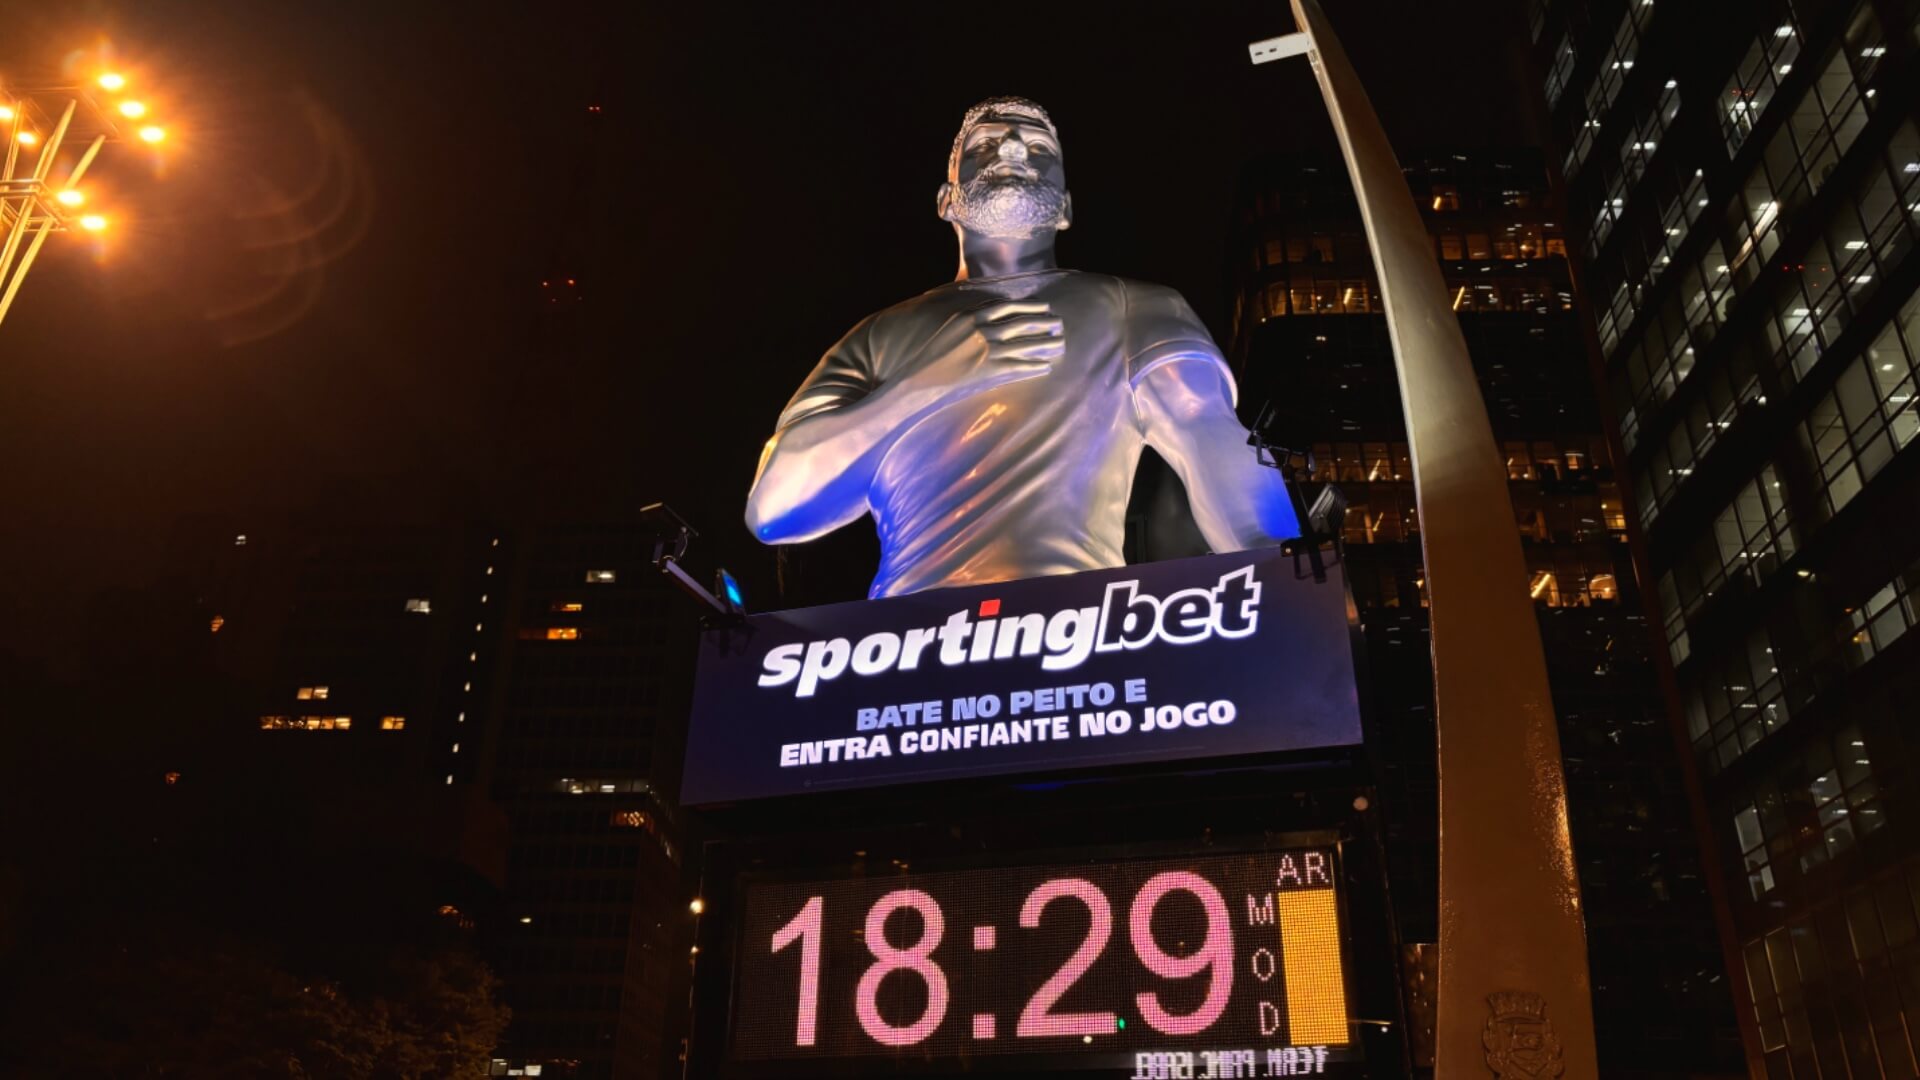 Sportingbet transforma Avenida Paulista com campanha OOH em relógio